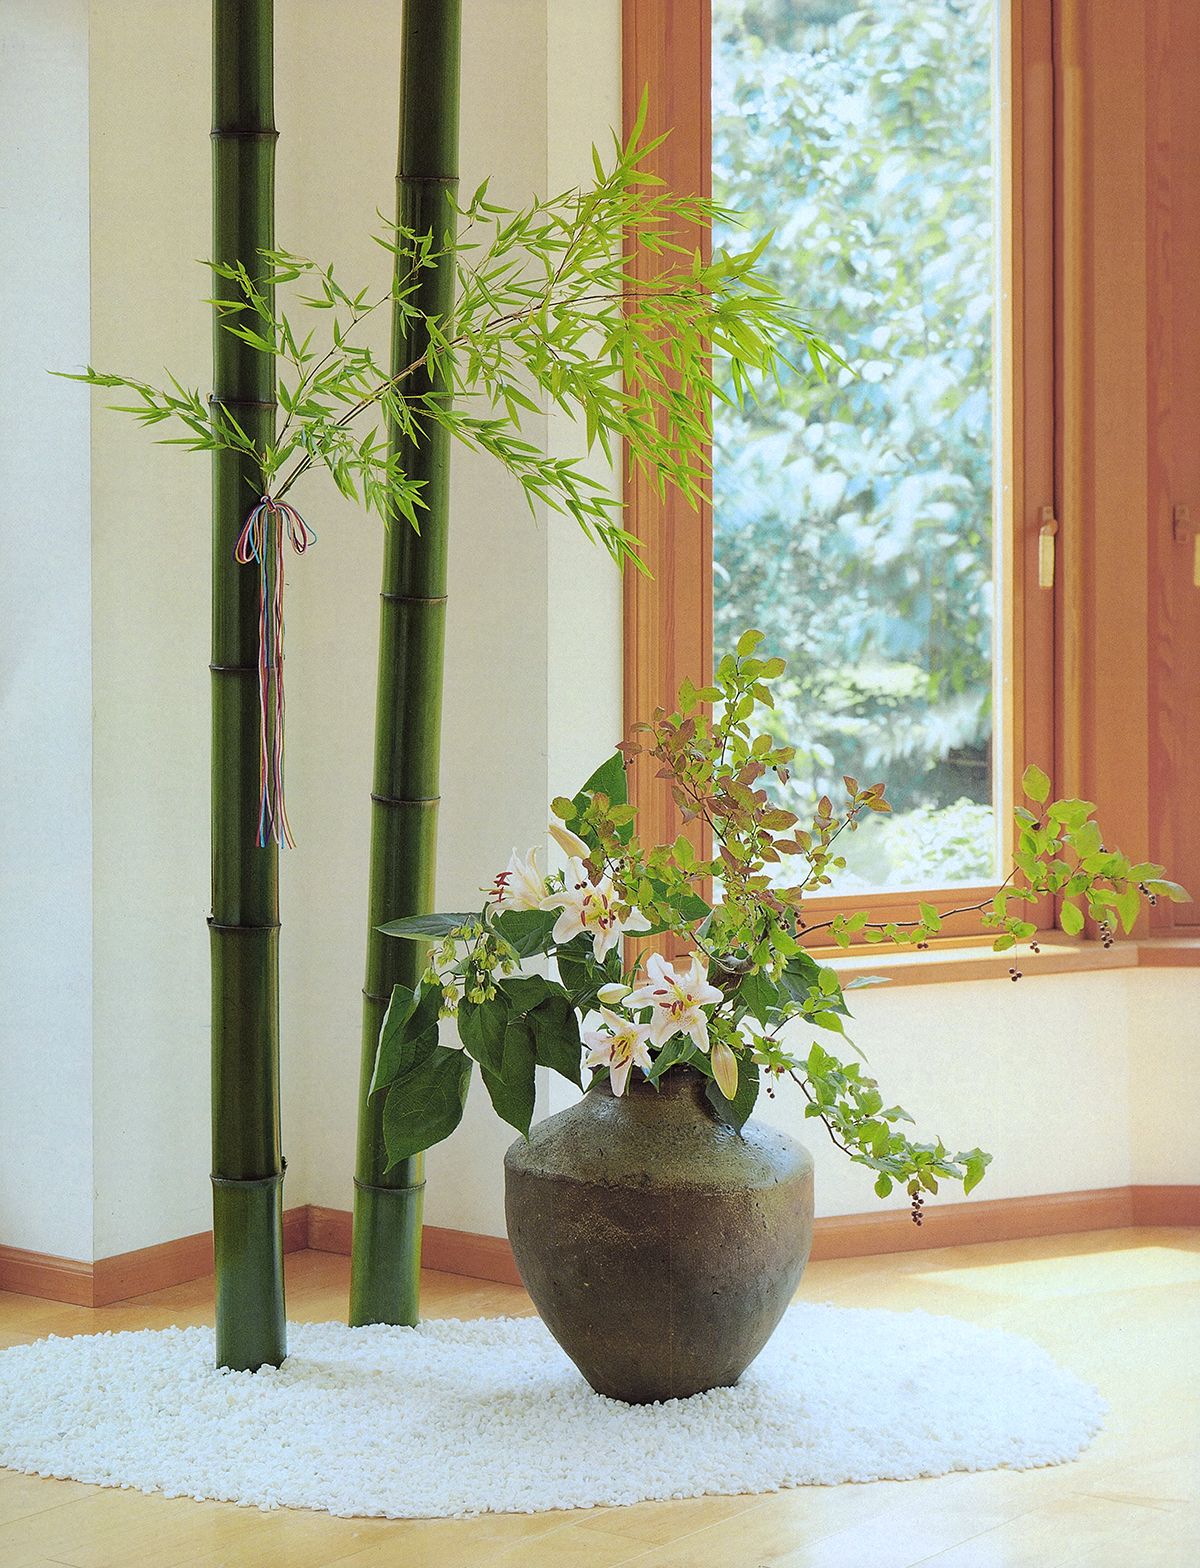 7月 家元のいけばな 七夕の花「竹と七草」